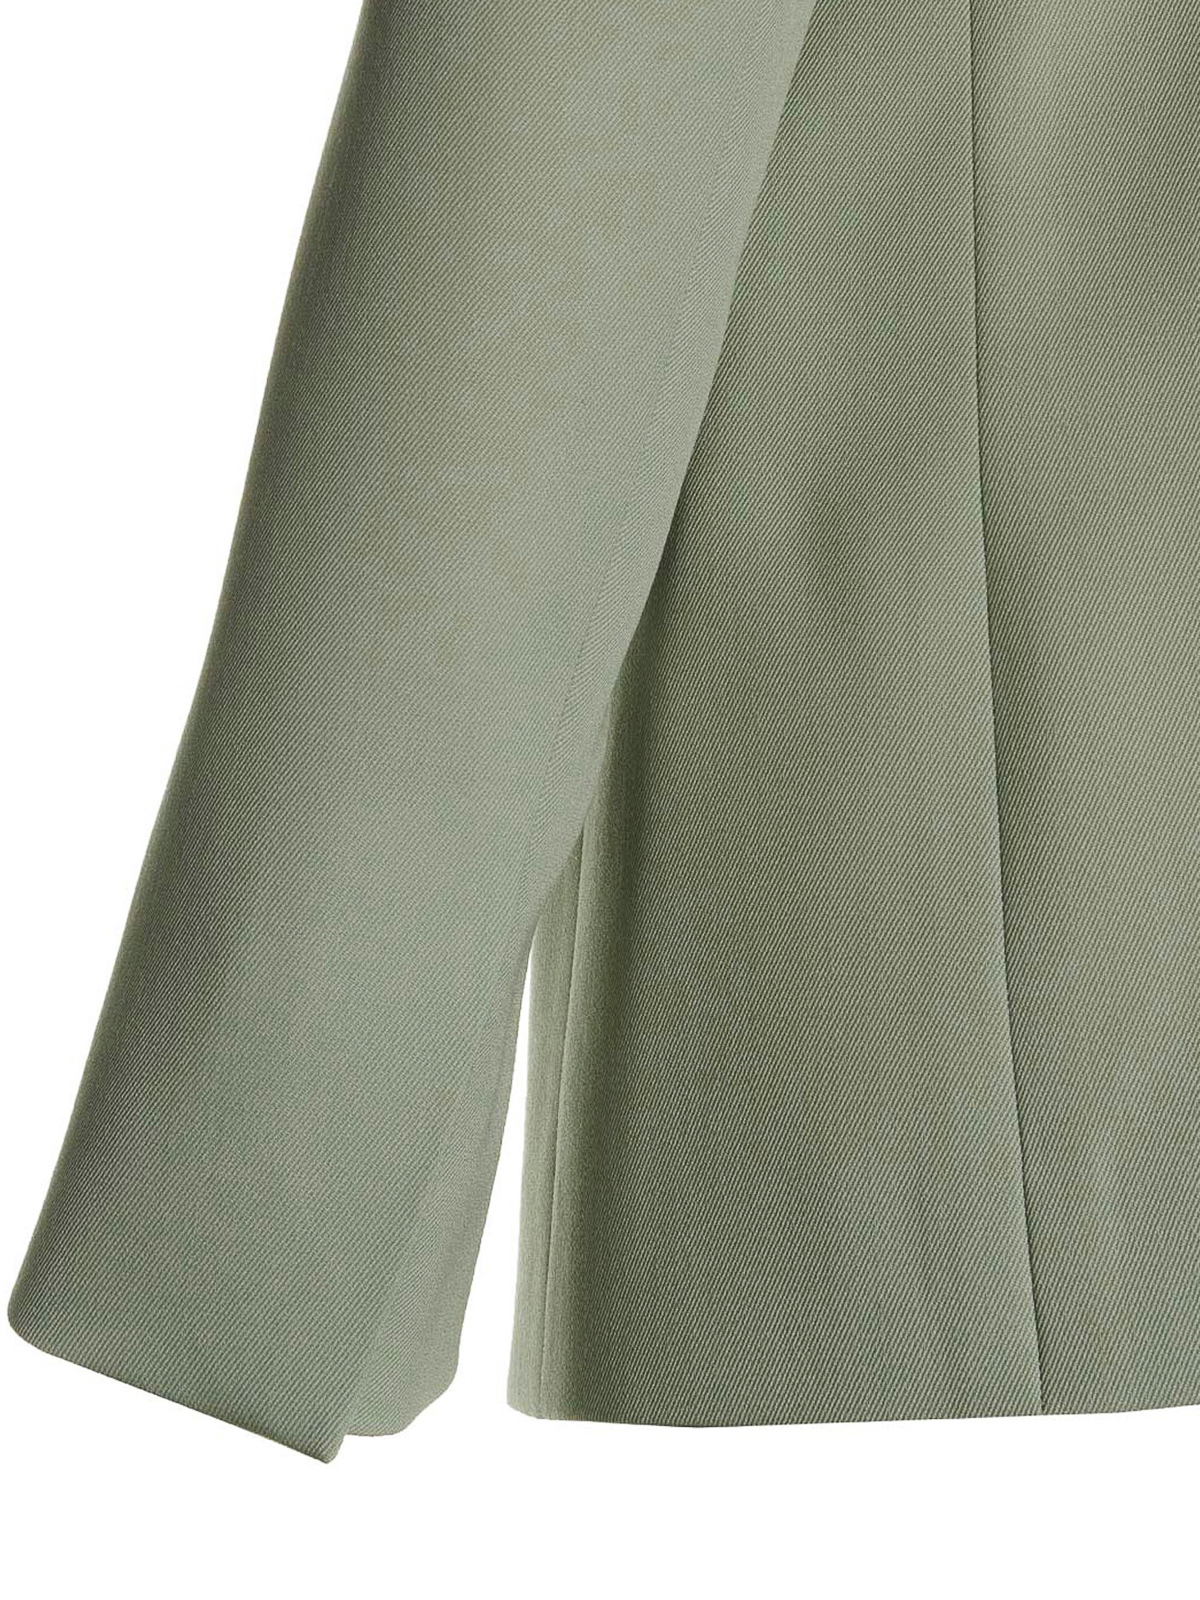 Shop Lanvin Wool Single Breast Blazer Jacket In Green